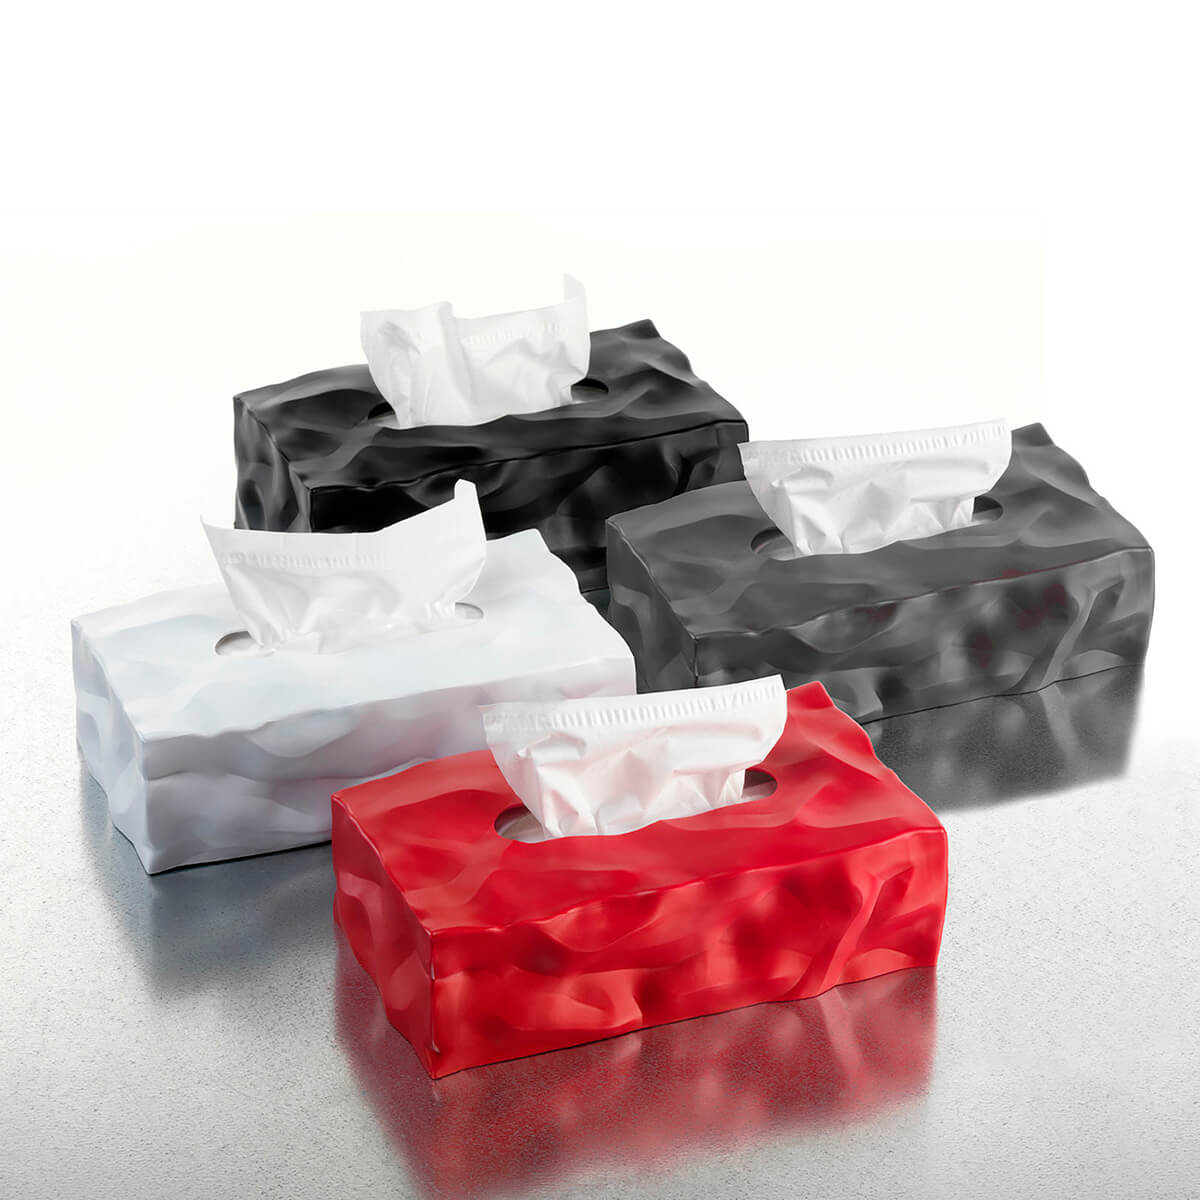 Zimtky Papiertuchbox Kosmetiktücher Box Taschentuchbox Tücherbox für Büro/ Auto/Zuhause